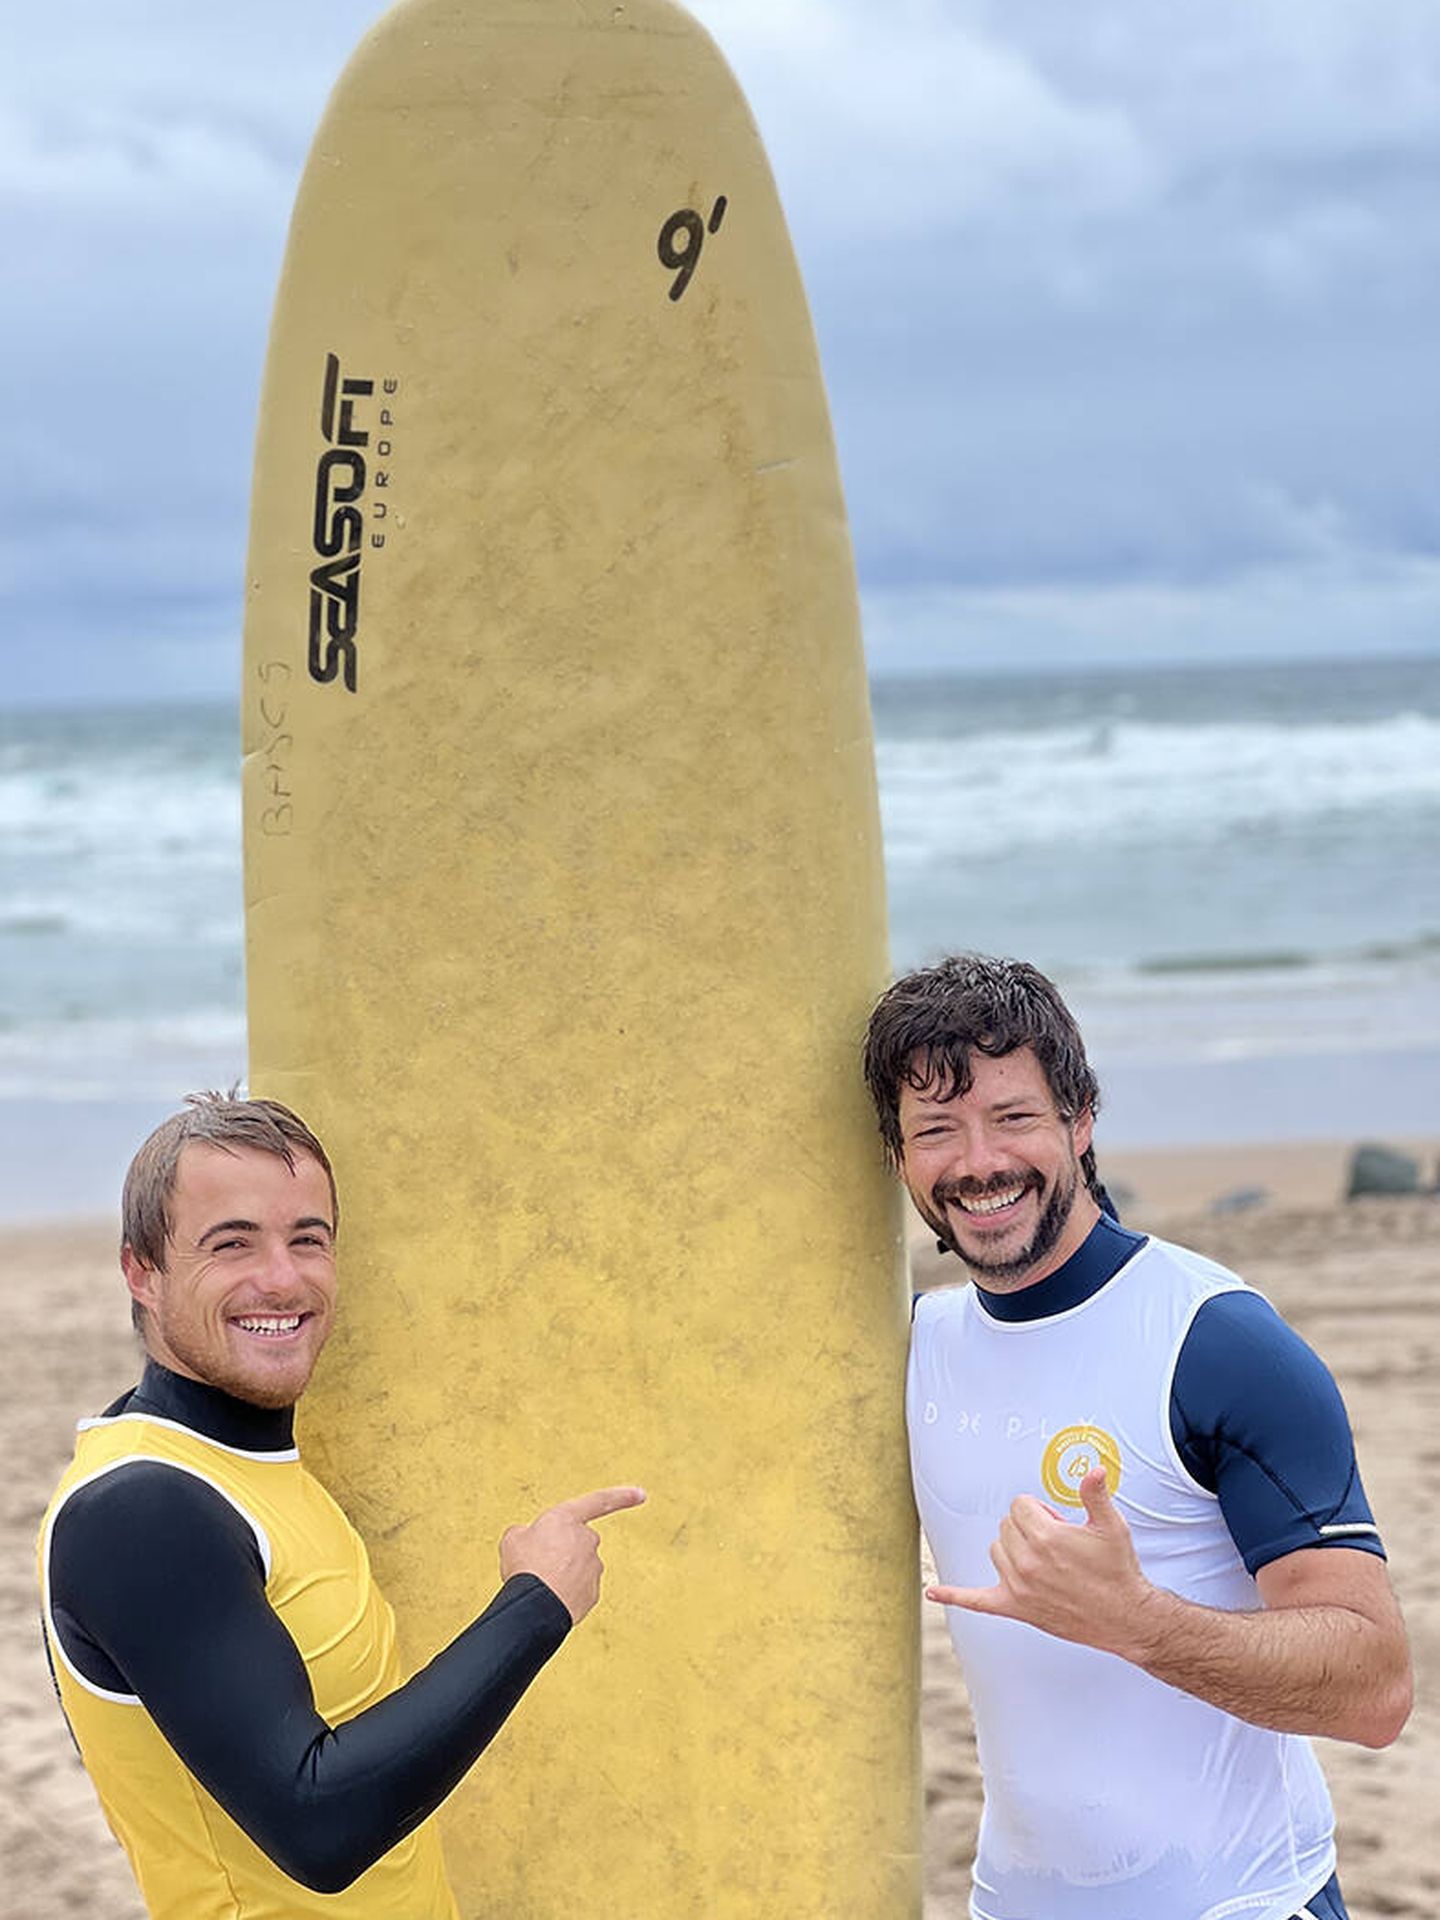 El campeón de surf Natxo González y Álvaro Morte, 'El orofesor' de 'La casa de papel', orgullosos embajadores Breitling. (Cortesía)